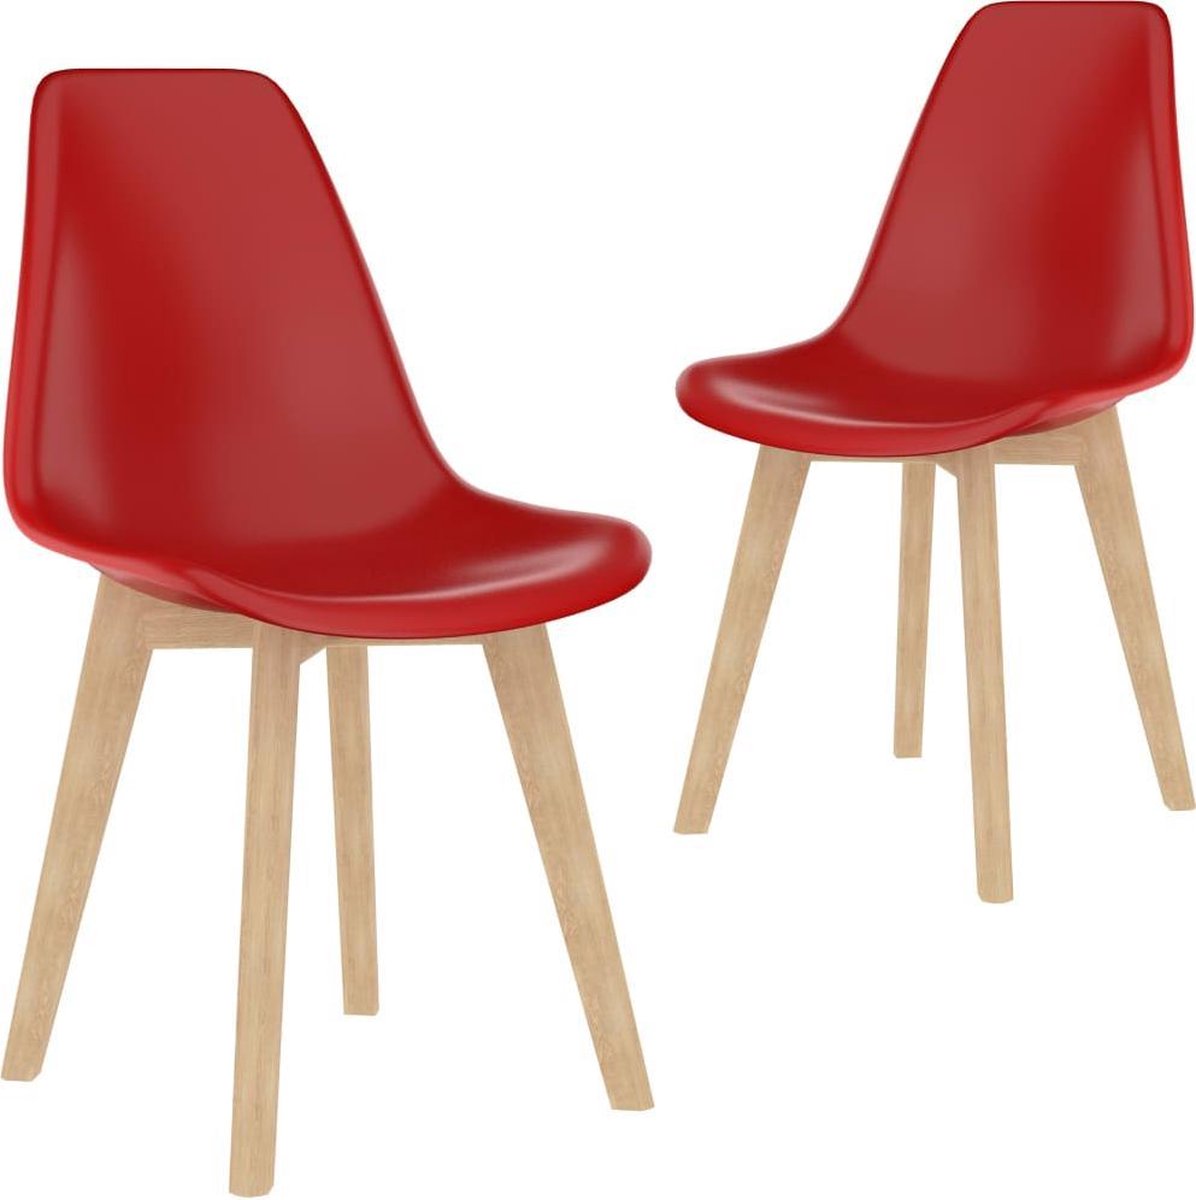 Nord Blanc 2 Moderne kunststof eetkamerstoelen stoelen rood ergonomische kuipstoelen Nordic Blanc Palerma Design red ergonomisch stoel zetel woonkamerstoelen zitting stevig hout plastic Scandinavisch Set van 2 stuks